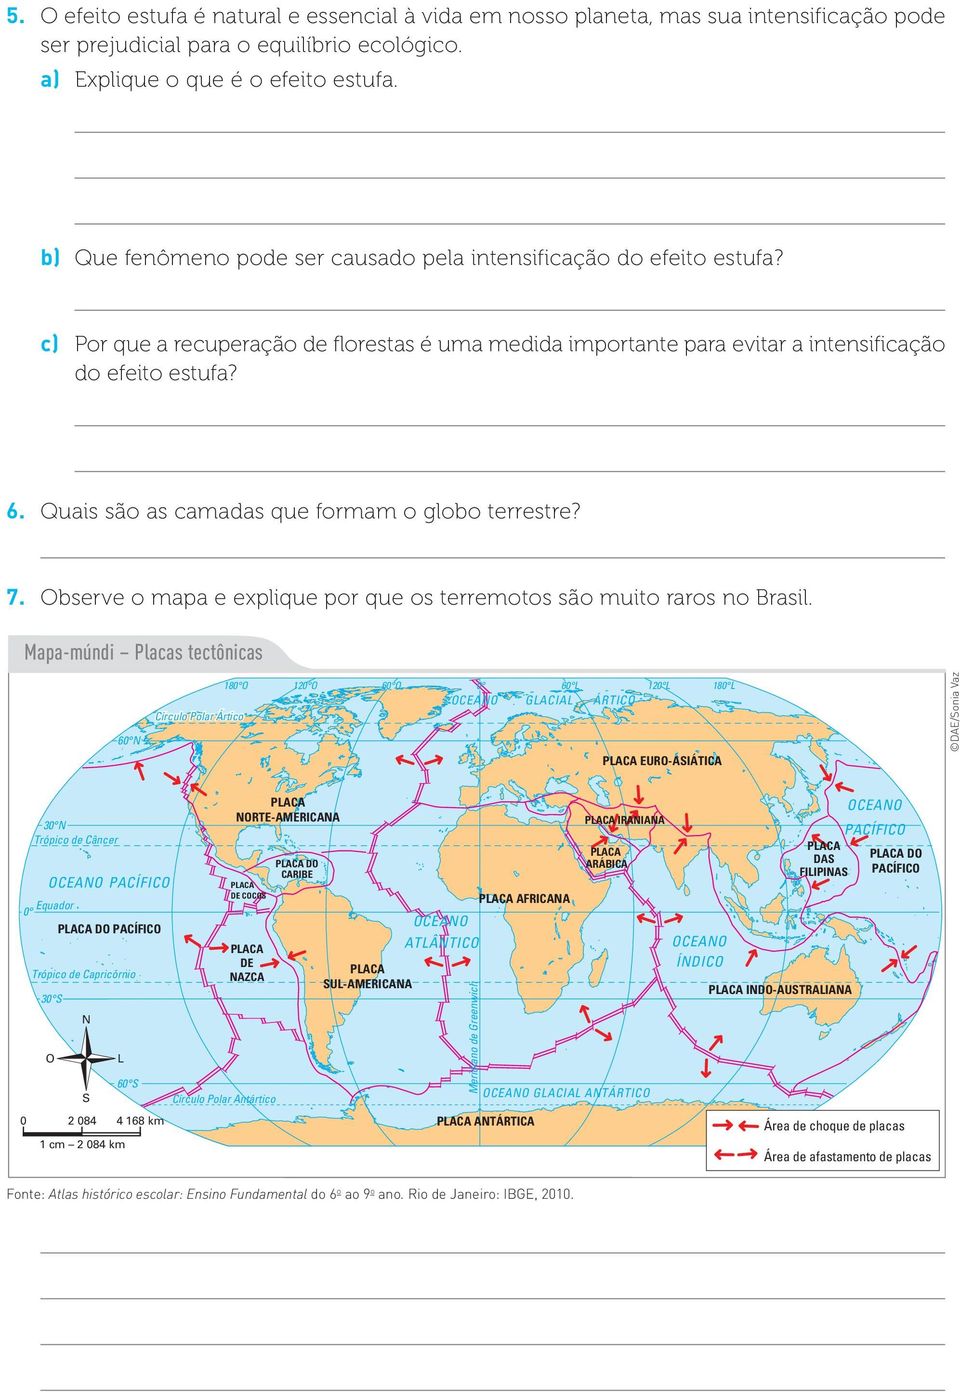 Quais são as camadas que formam o globo terrestre? 7. Observe o mapa e explique por que os terremotos são muito raros no Brasil.